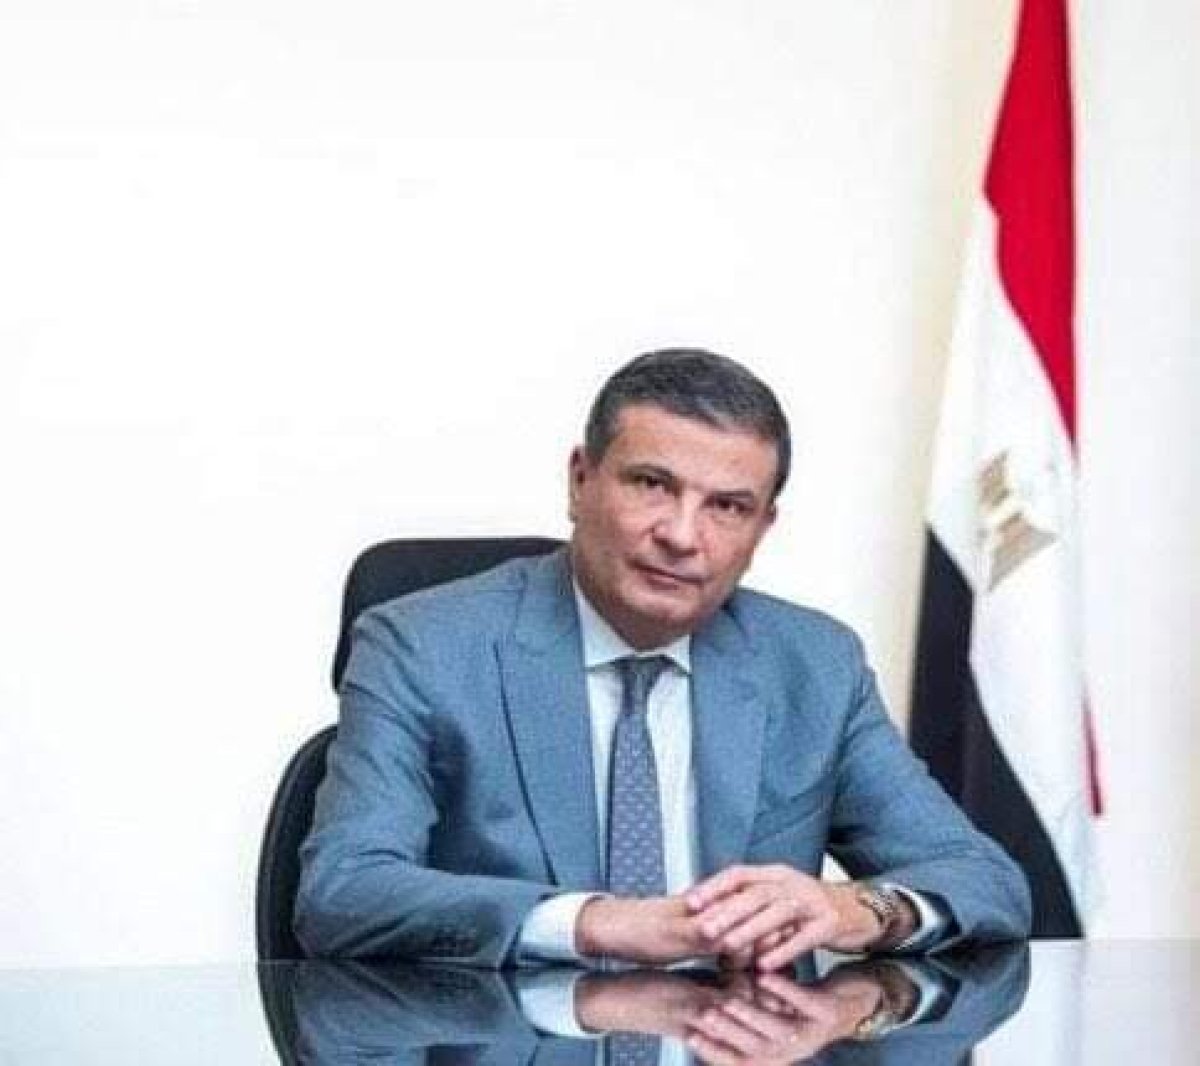  وزير الزراعة الجديد: توجيهات من القيادة السياسية الاهتمام بالفلاح وتوفير مستلزمات الإنتاج وبكل ما يمس قوت المصريين